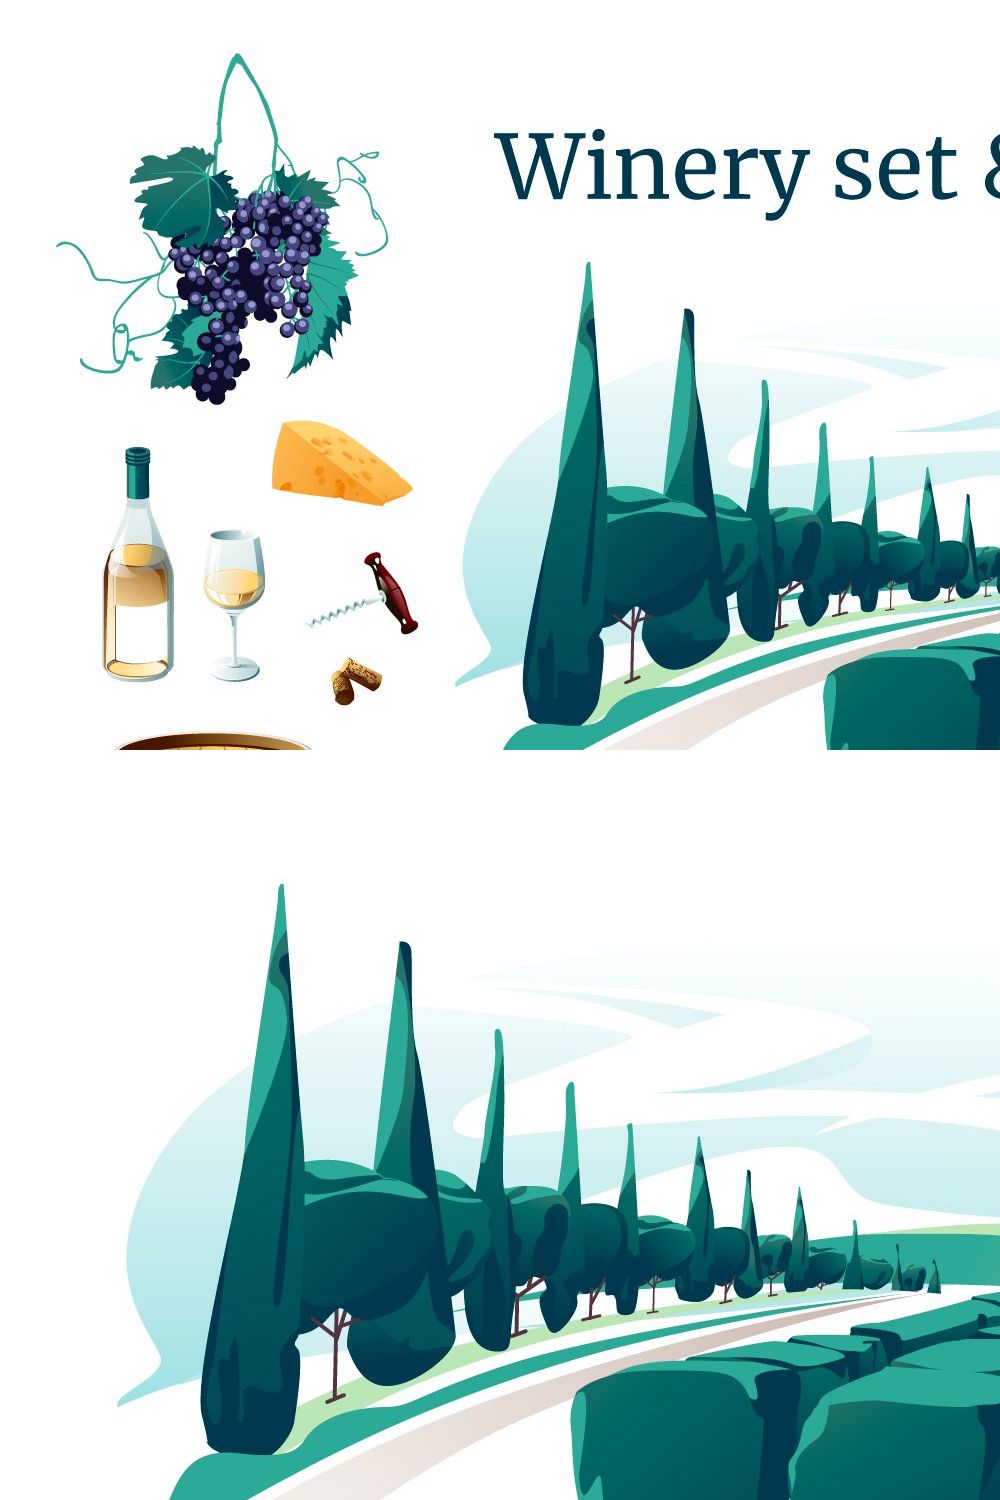 Vineyard landscape & wine set pinterest preview image.